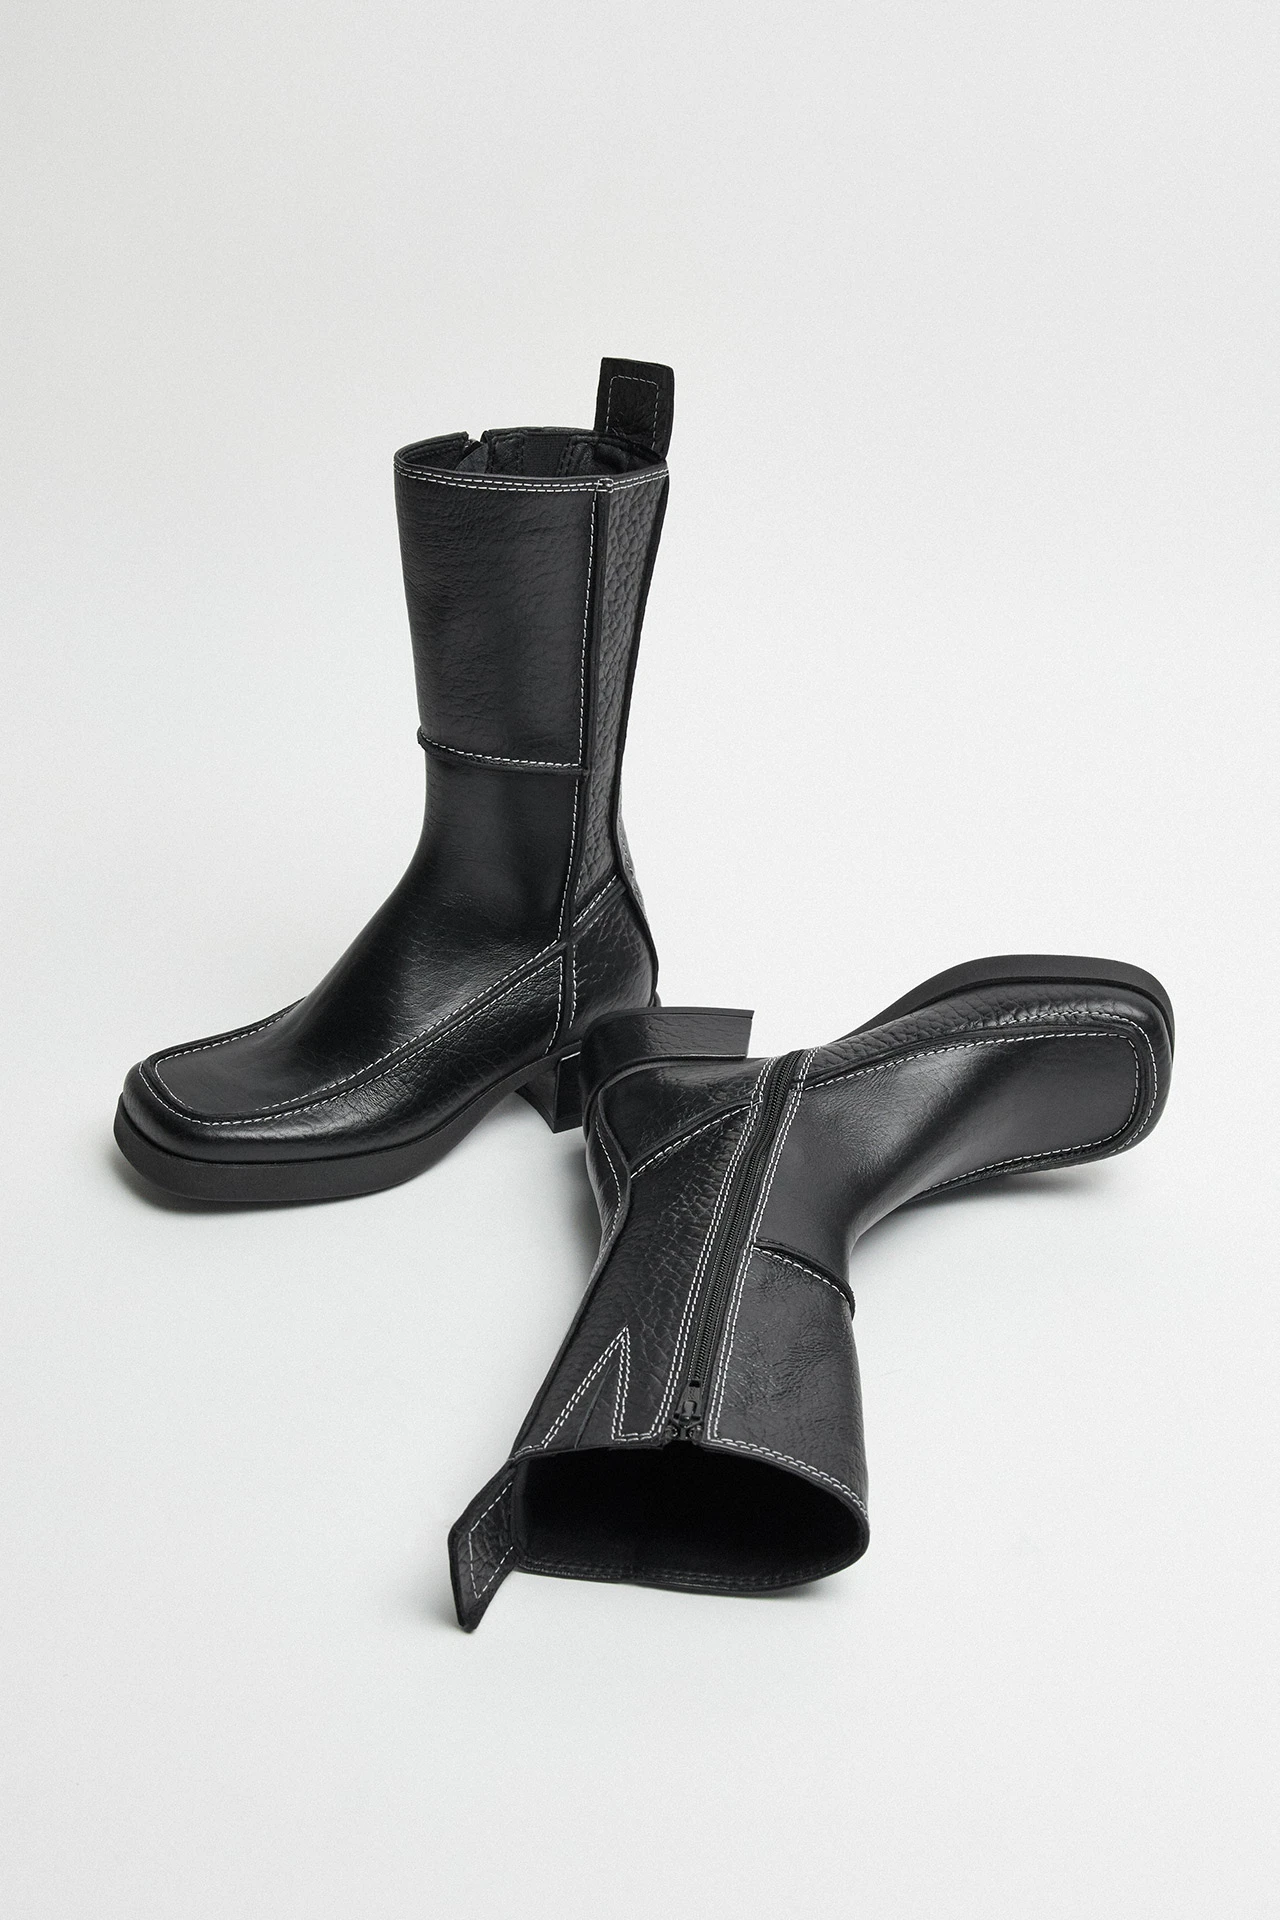 Miista-alzira-black-boots-02